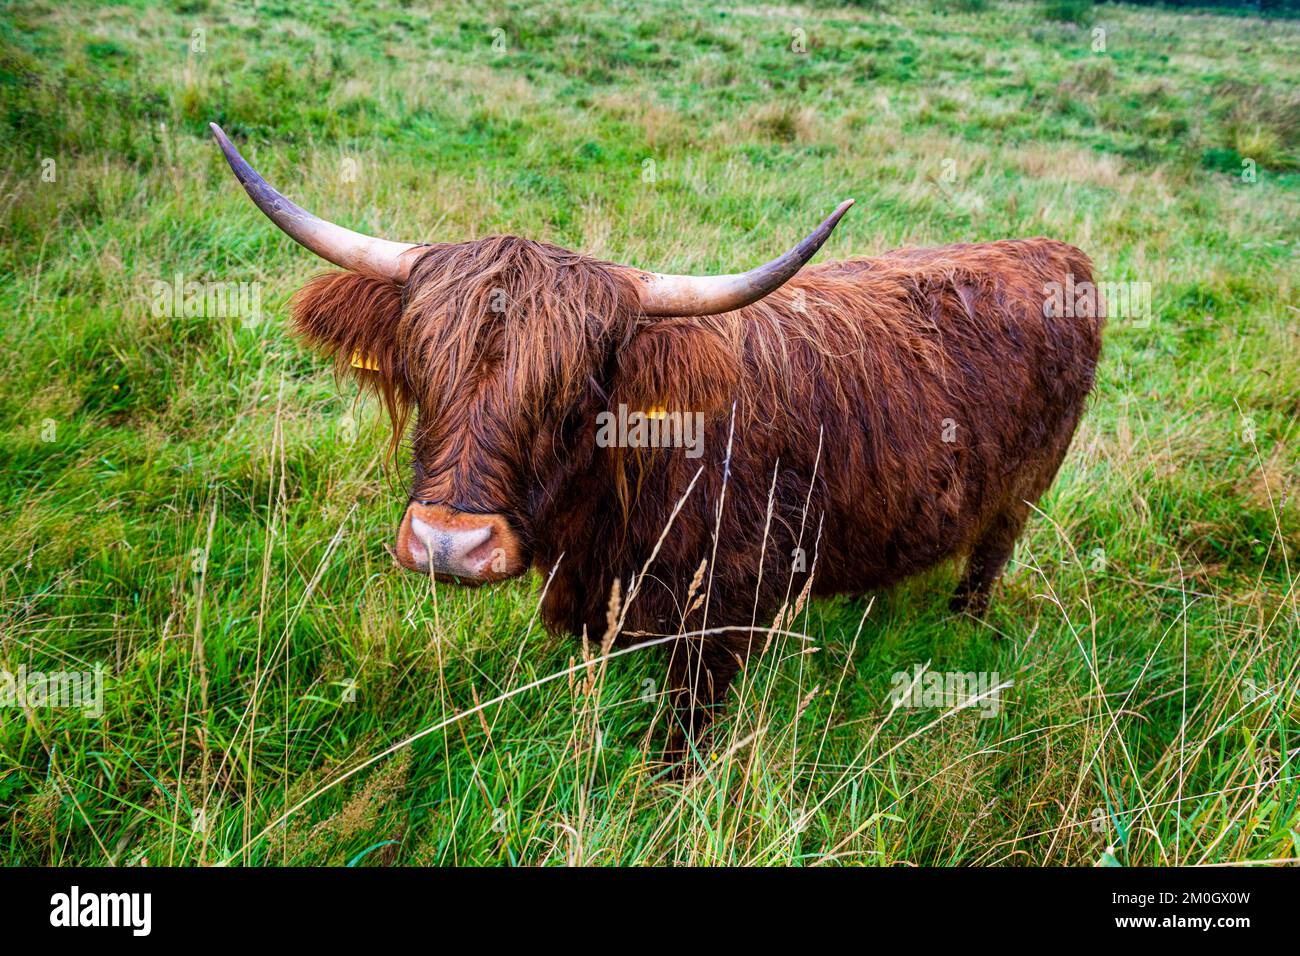 Les anciens bovins se reproduisent dans le site du patrimoine mondial de l'UNESCO Hedeby, Haithabu, Allemagne, Europe Banque D'Images